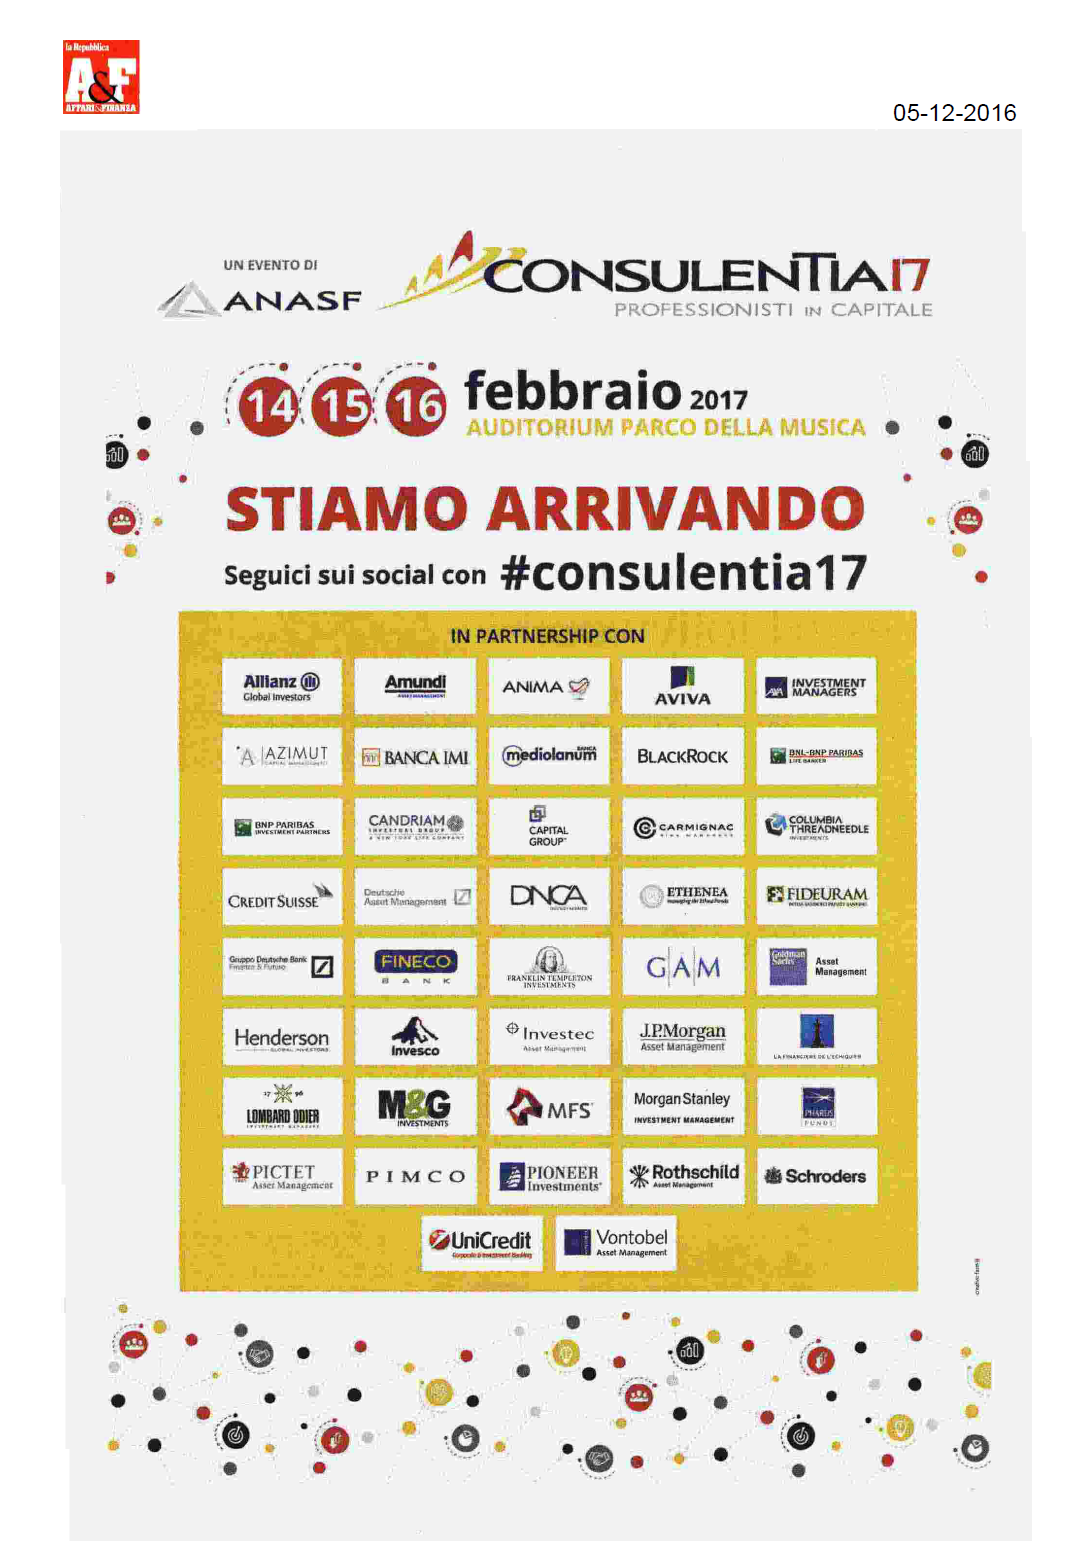 ConsulenTia2017 Roma è su Affari&Finanza